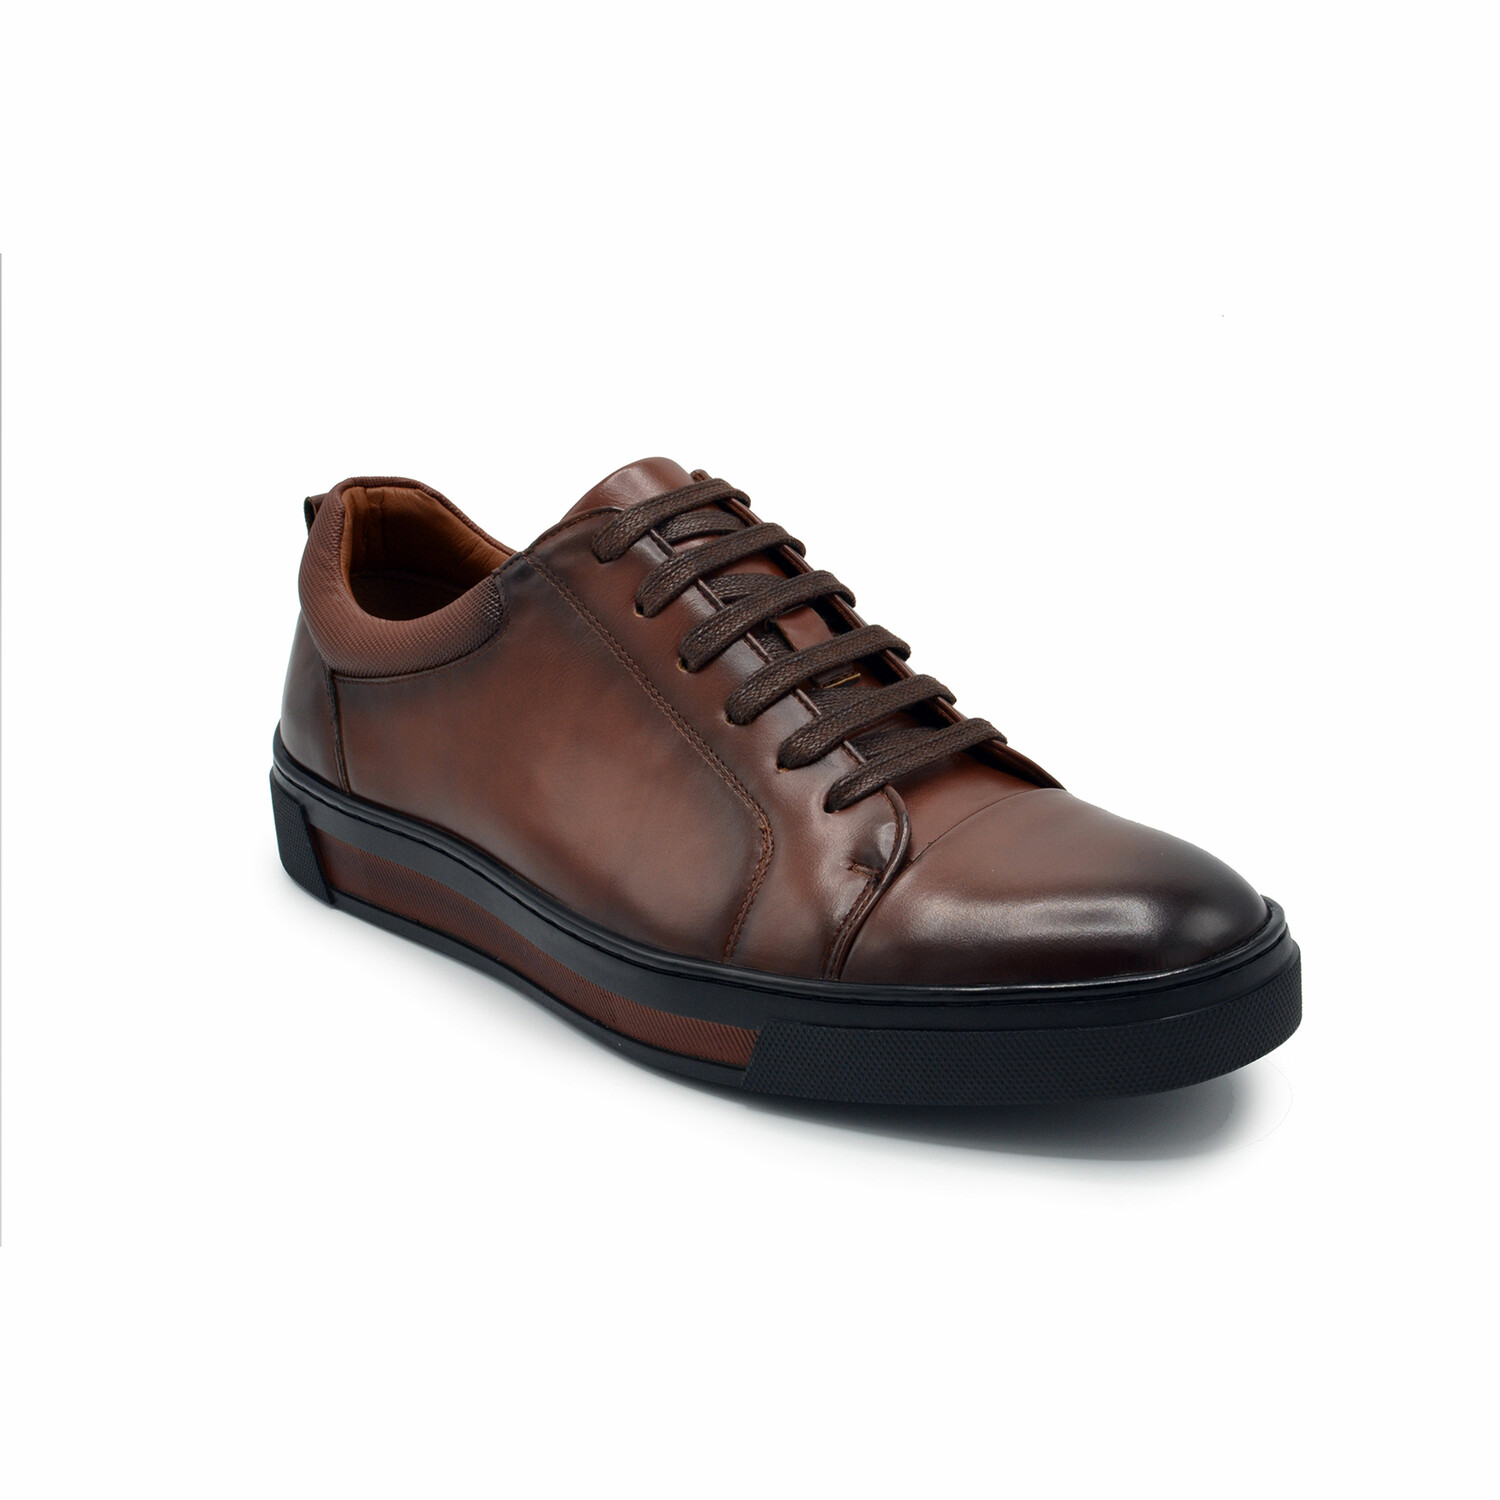 Aston Marc Mens Palio Court Shoe // Tan (US Men's Size 8.5